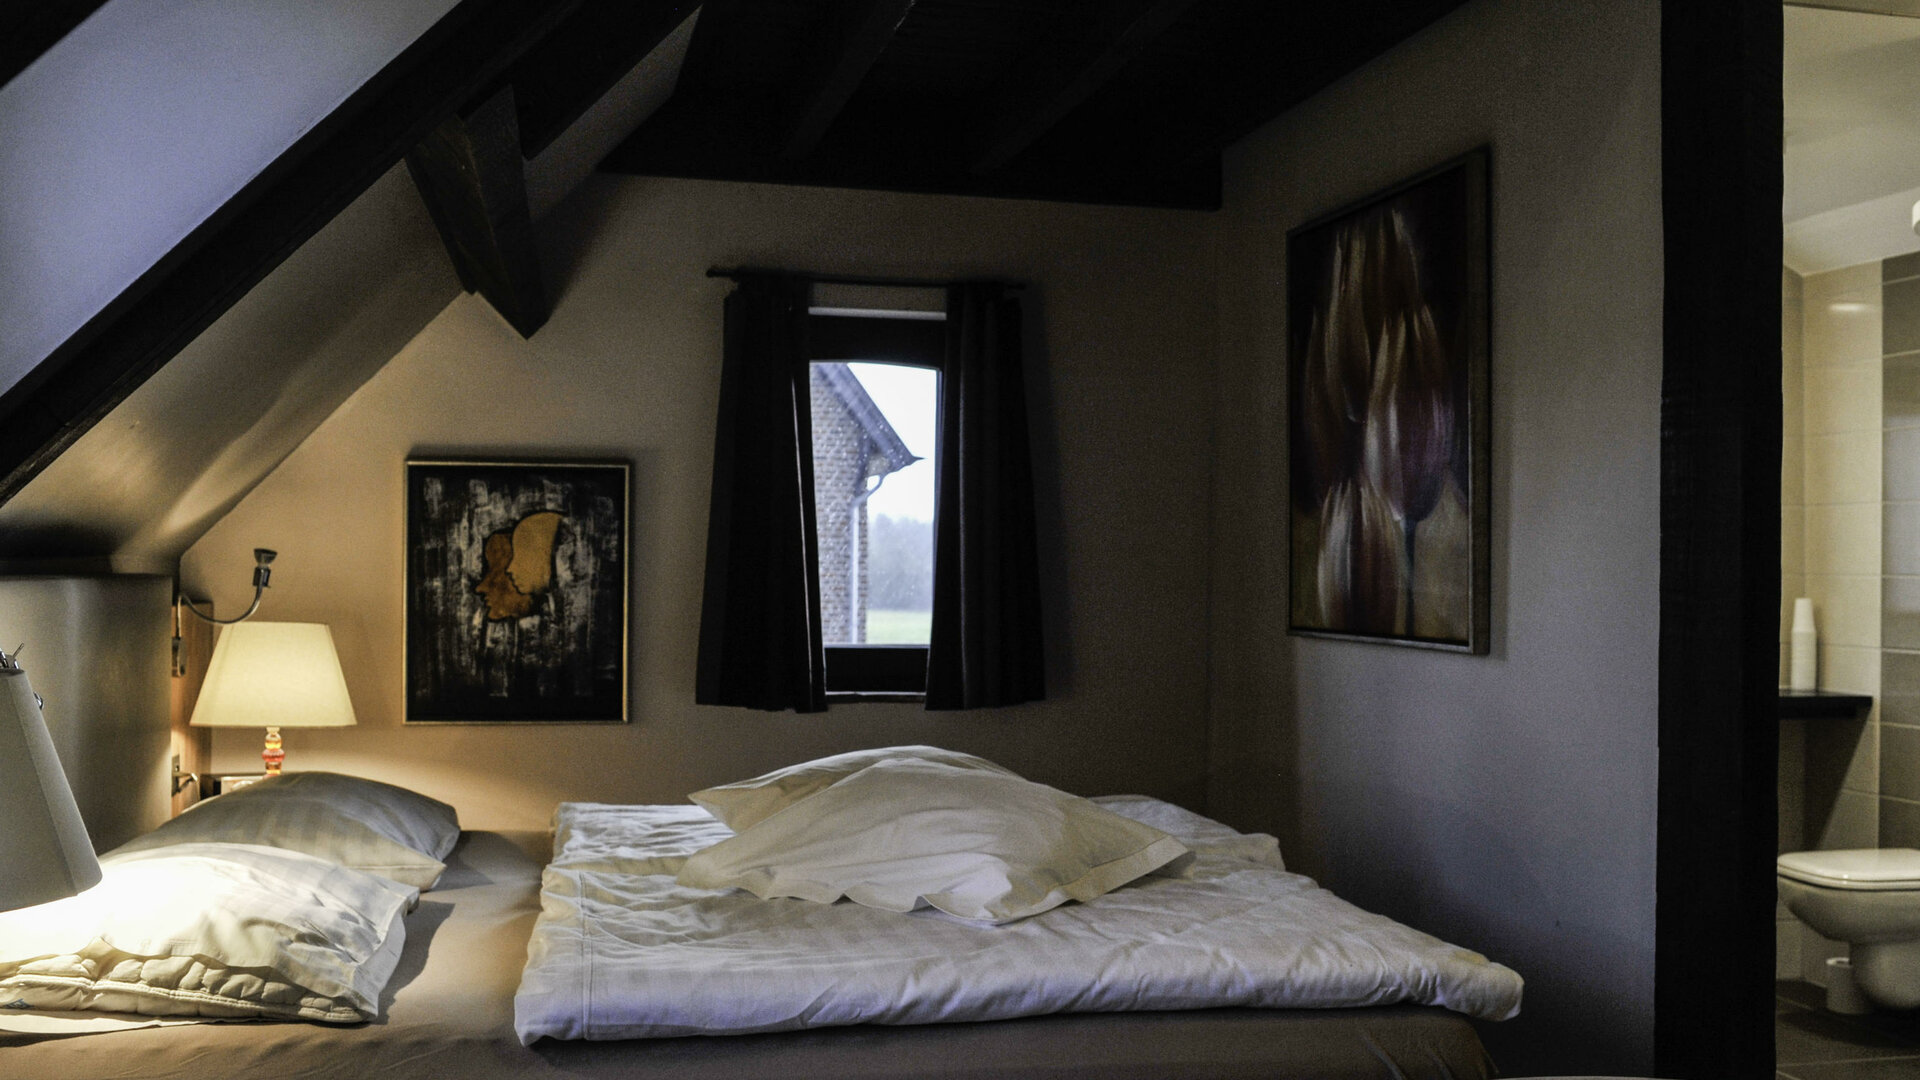 B&B Guestrooms De Dubbelmolen - Sfeerfoto van een kamer